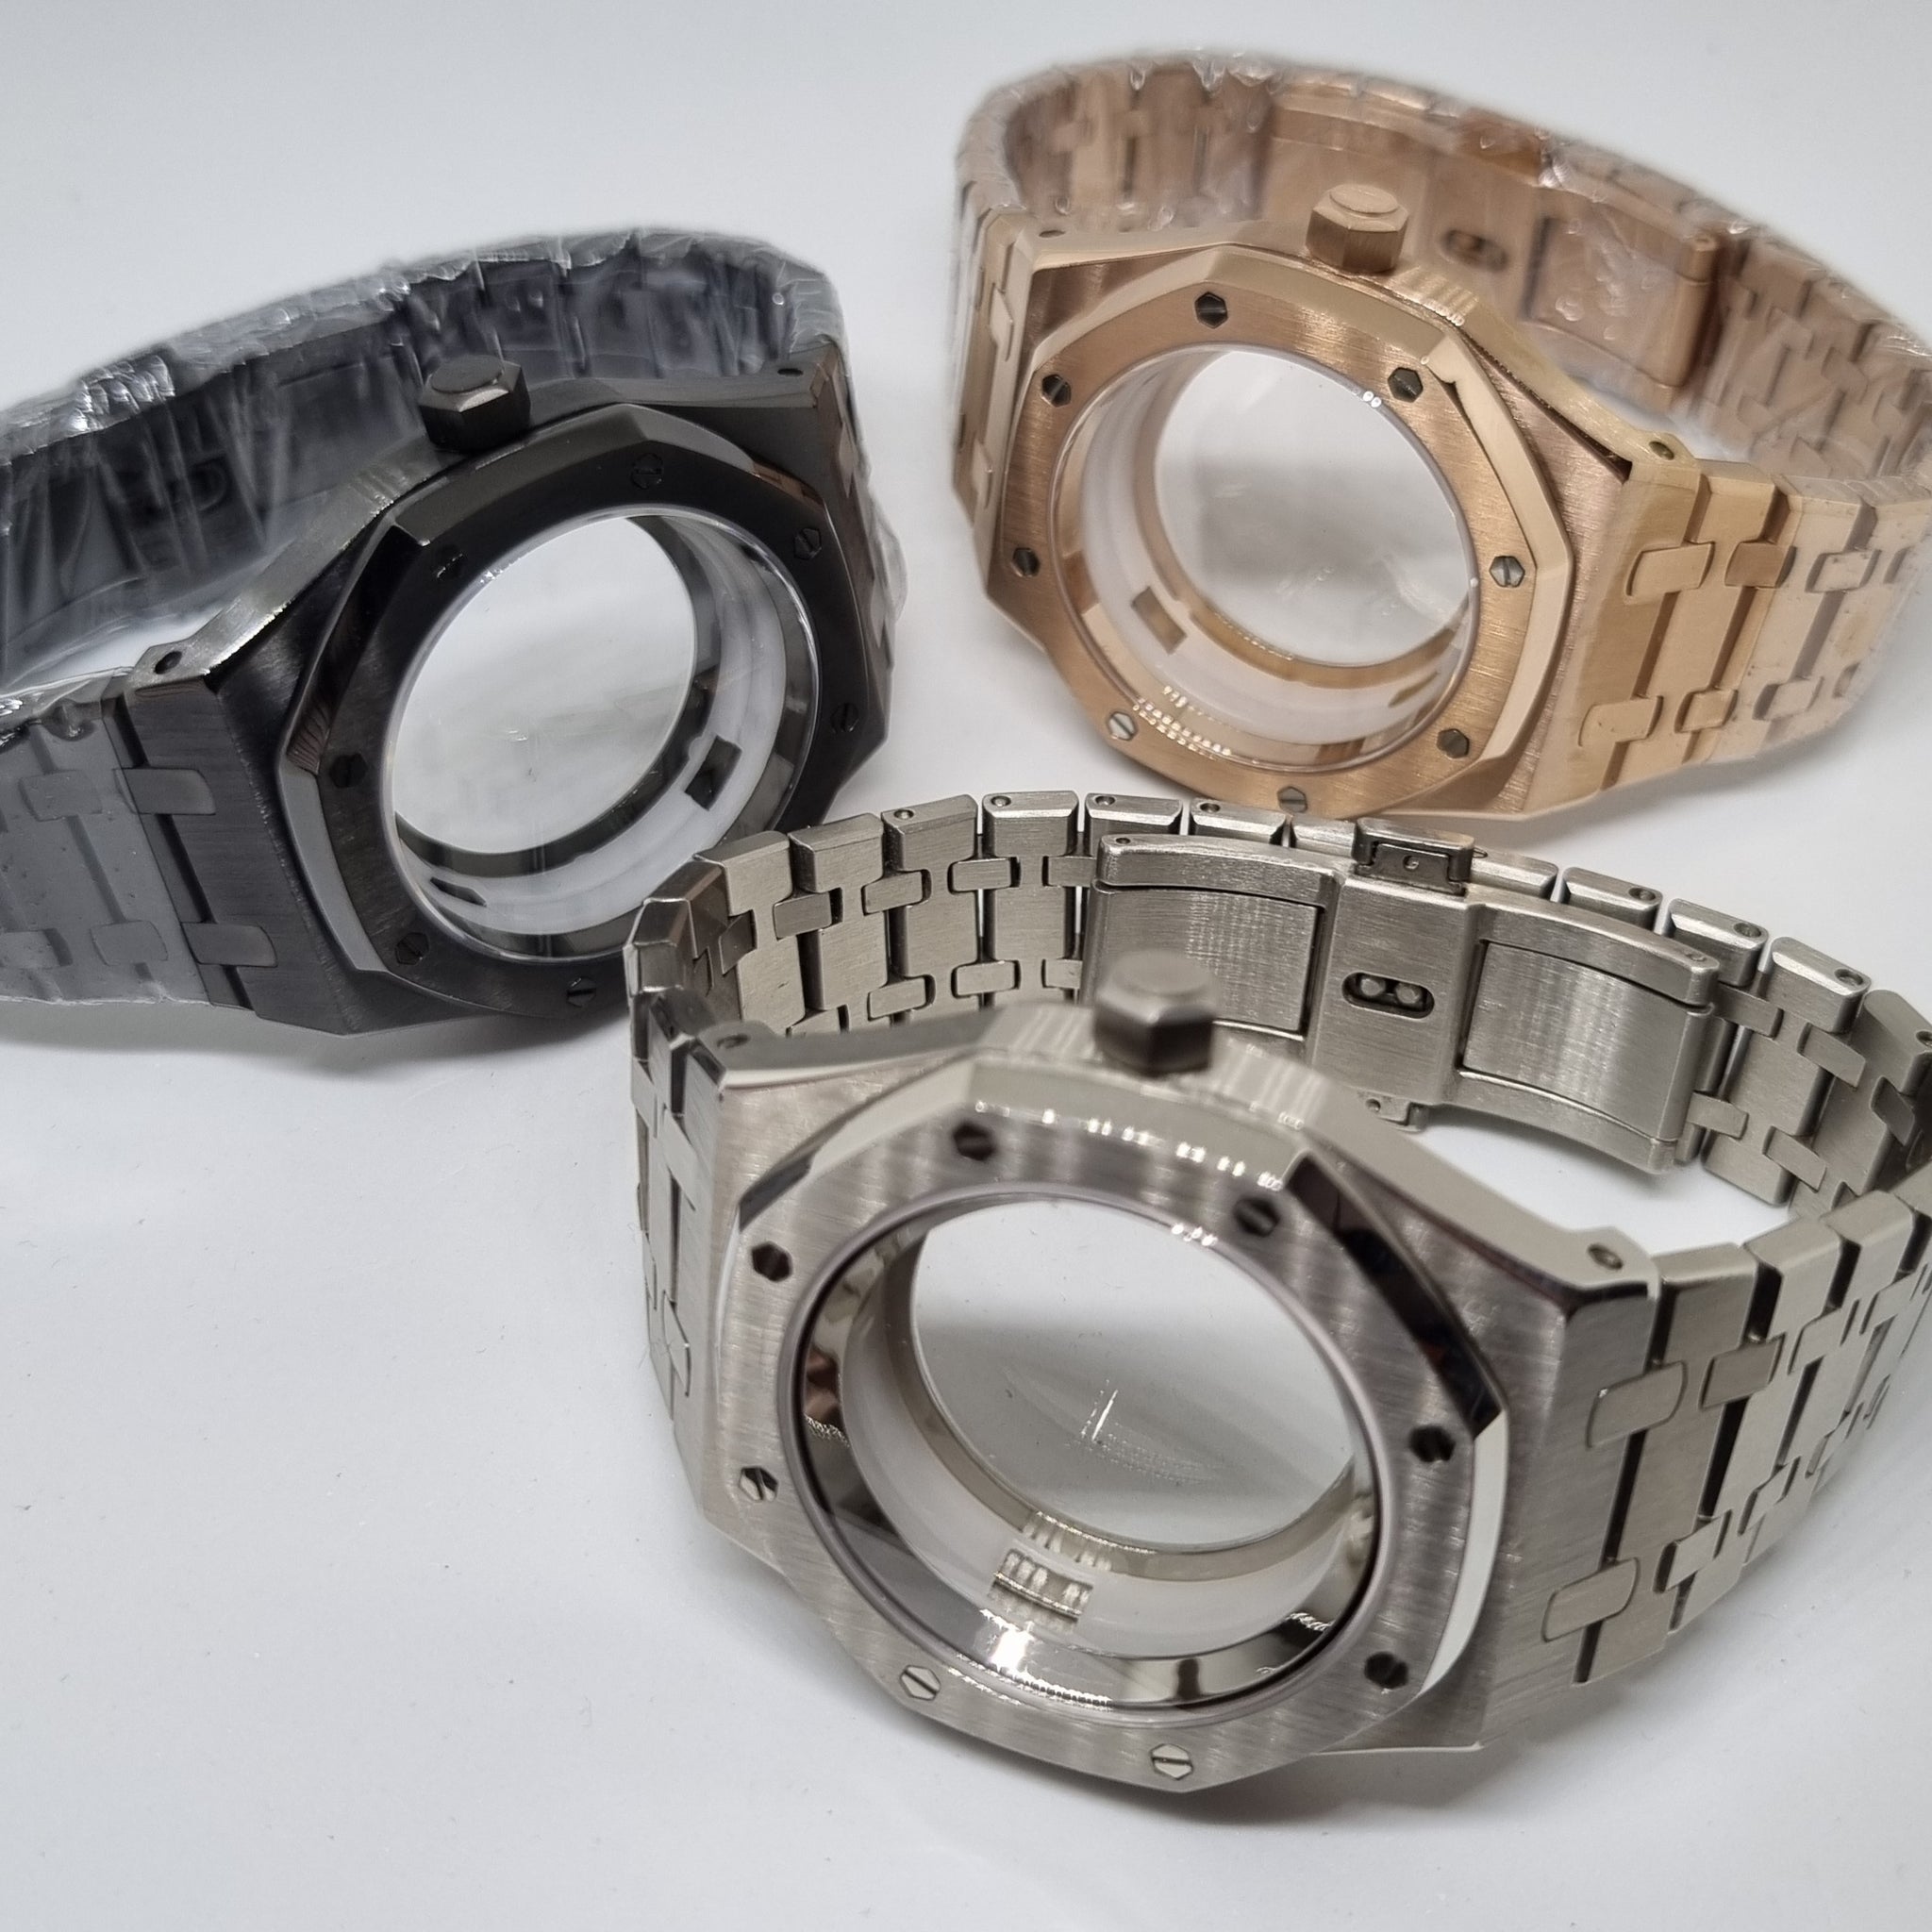 CAS009 APro Case Set with Bracelet  – Mod Mode Watches